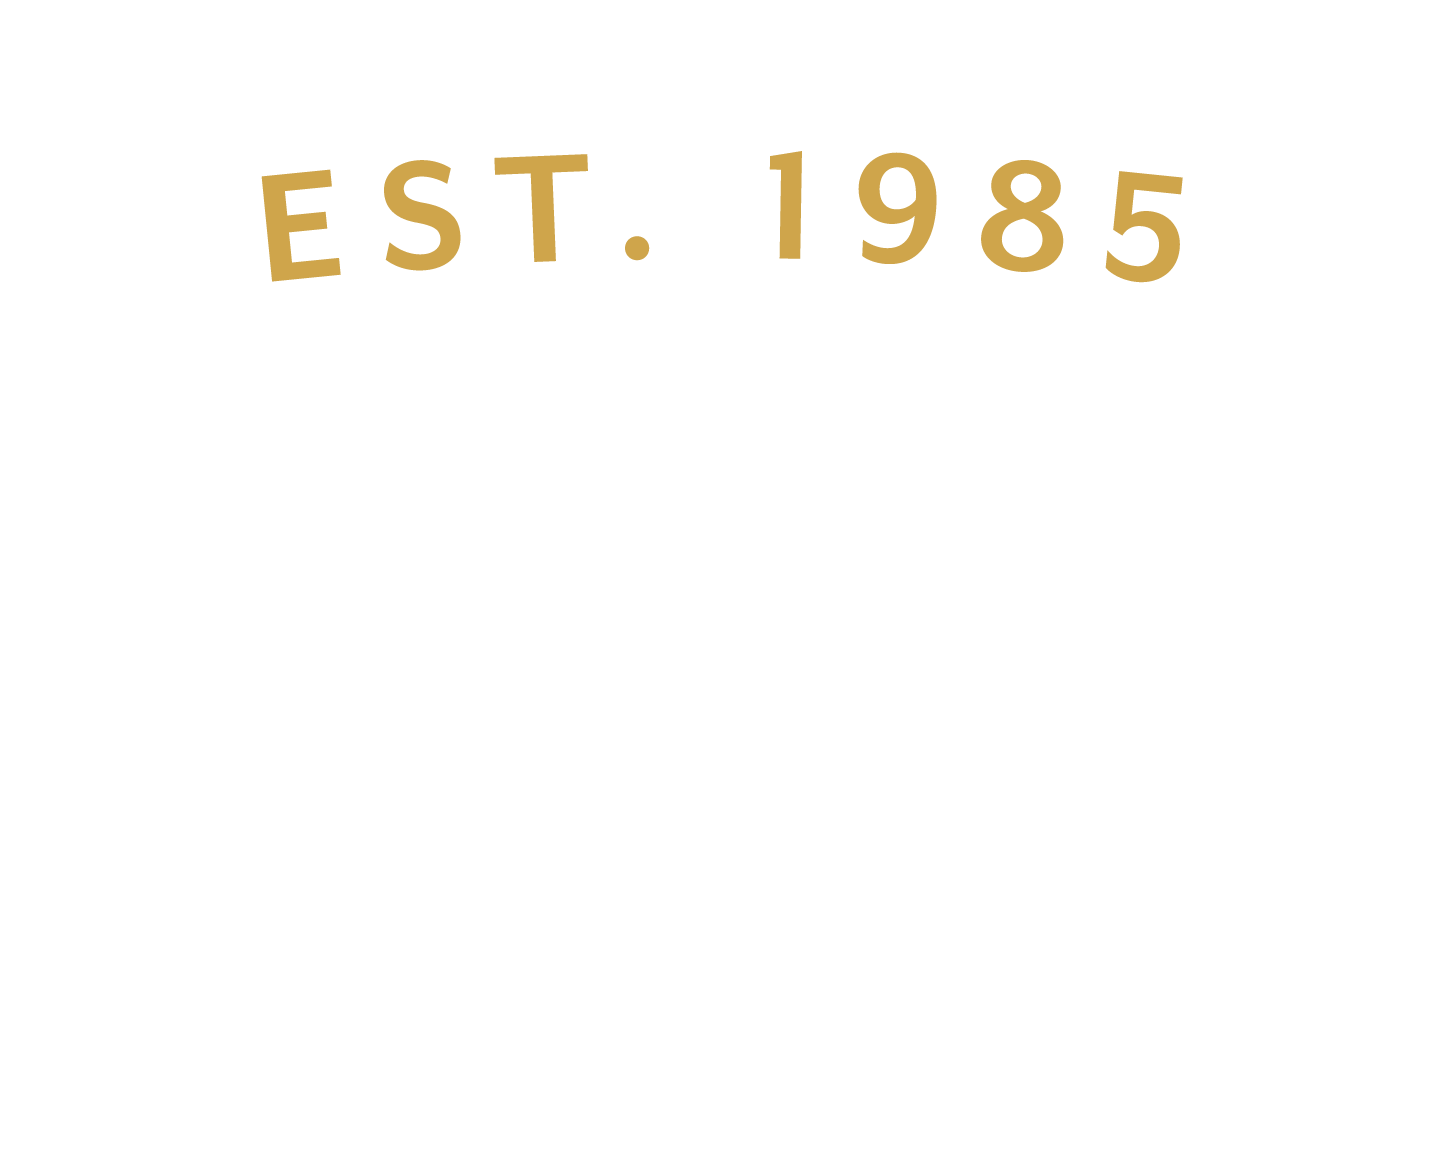 roi-initials-gold-white